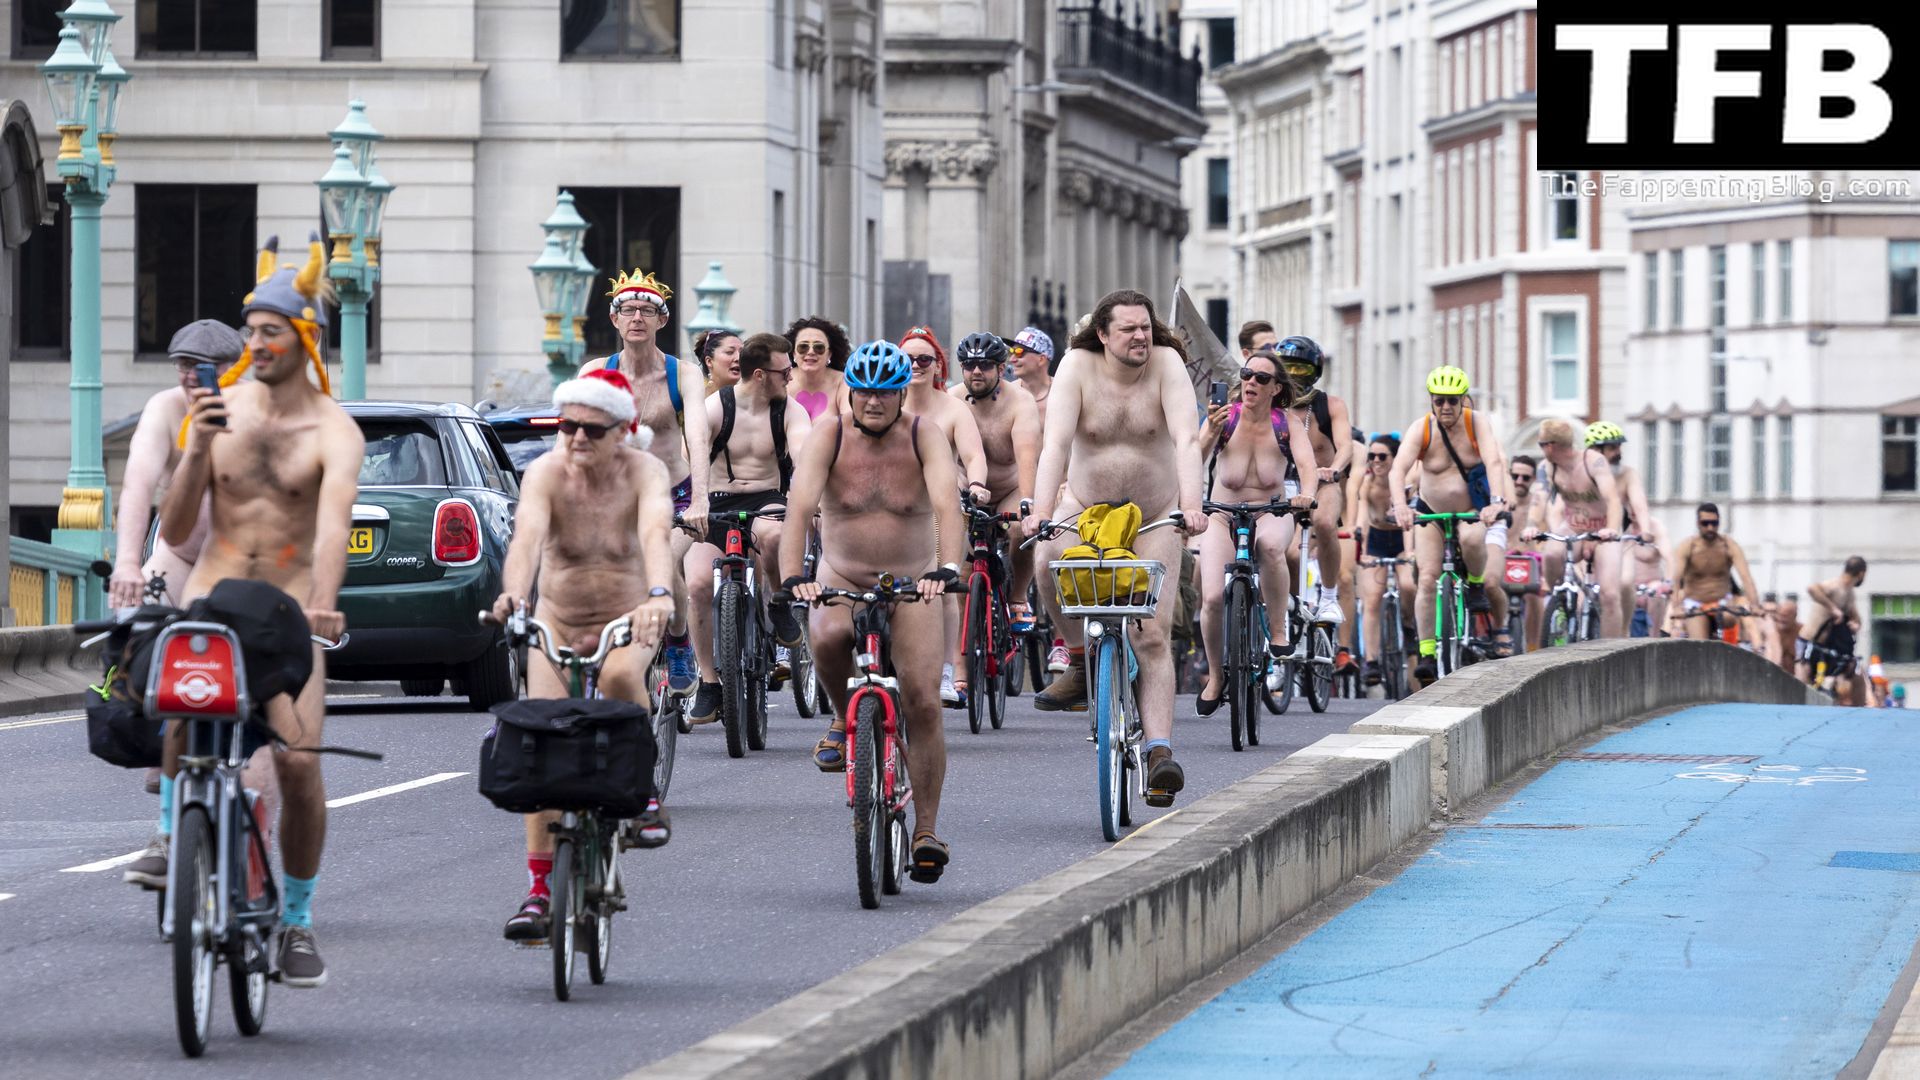 The-2022-World-Naked-Bike-Ride-The-Fappening-Blog-2.jpg